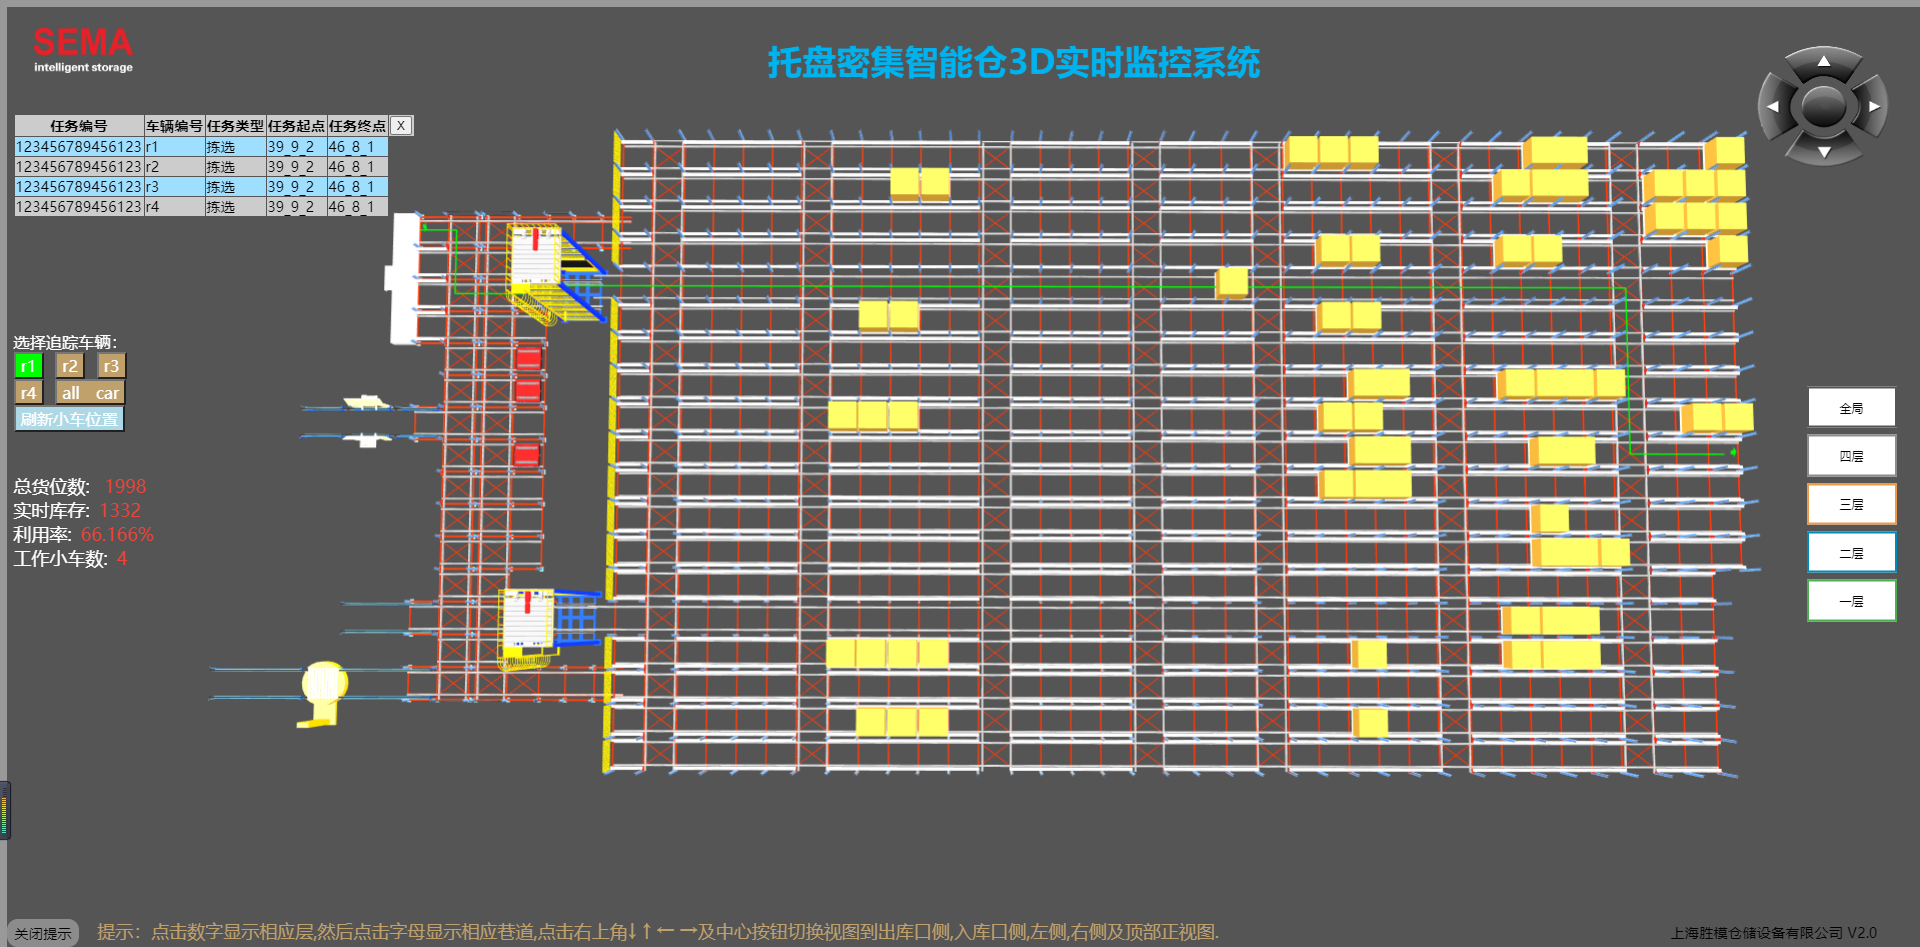  上海胜模  i-wms智能仓储管理系统